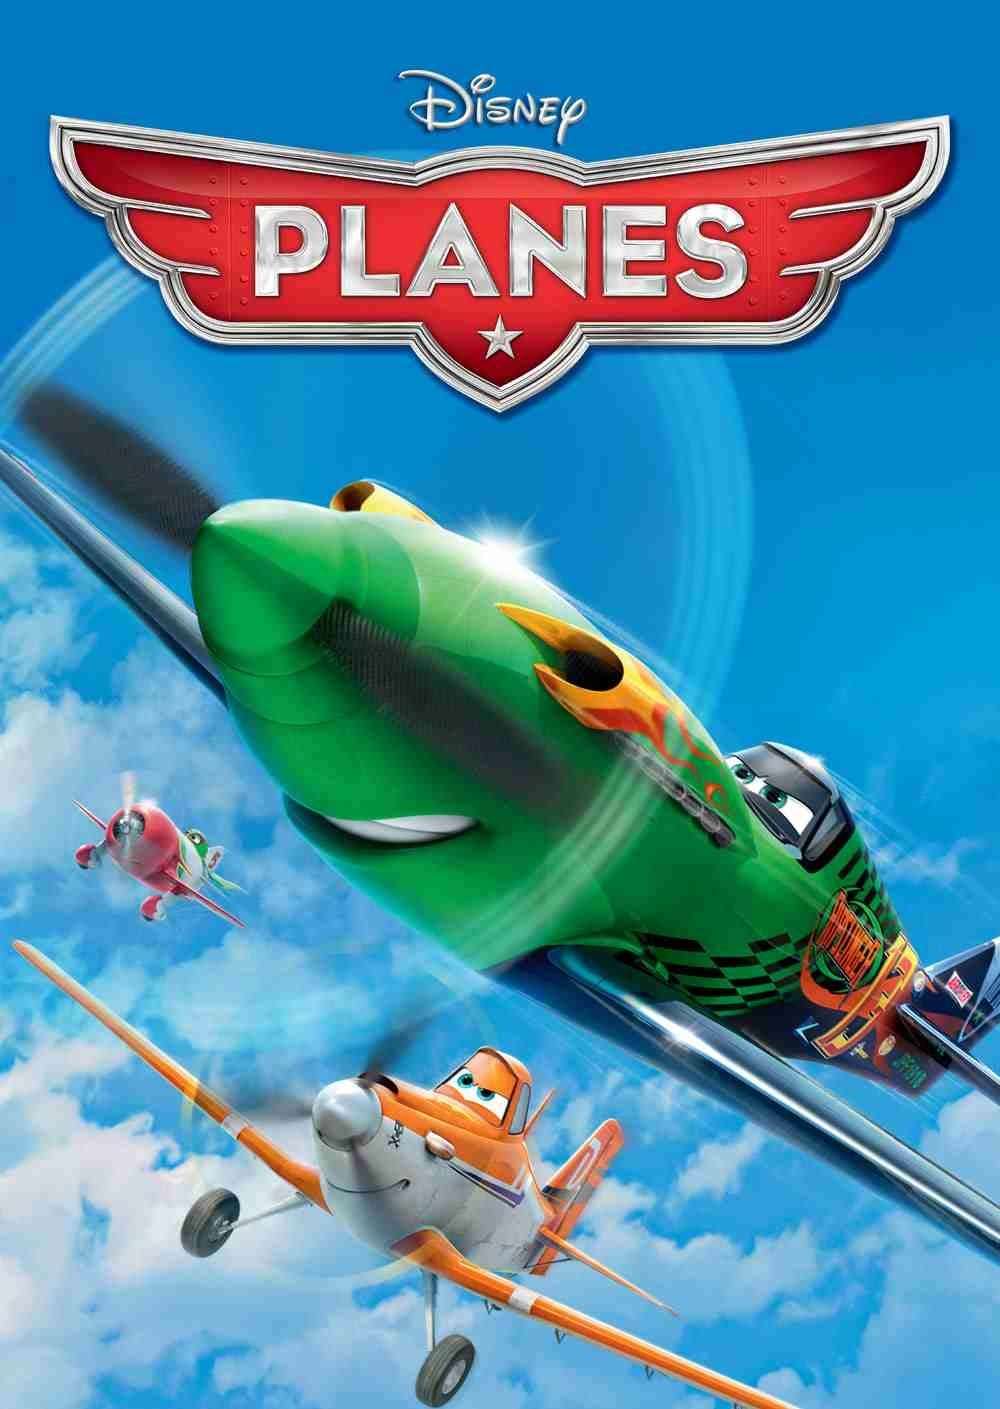 Disney Planes - RELOADED - Tek Link indir